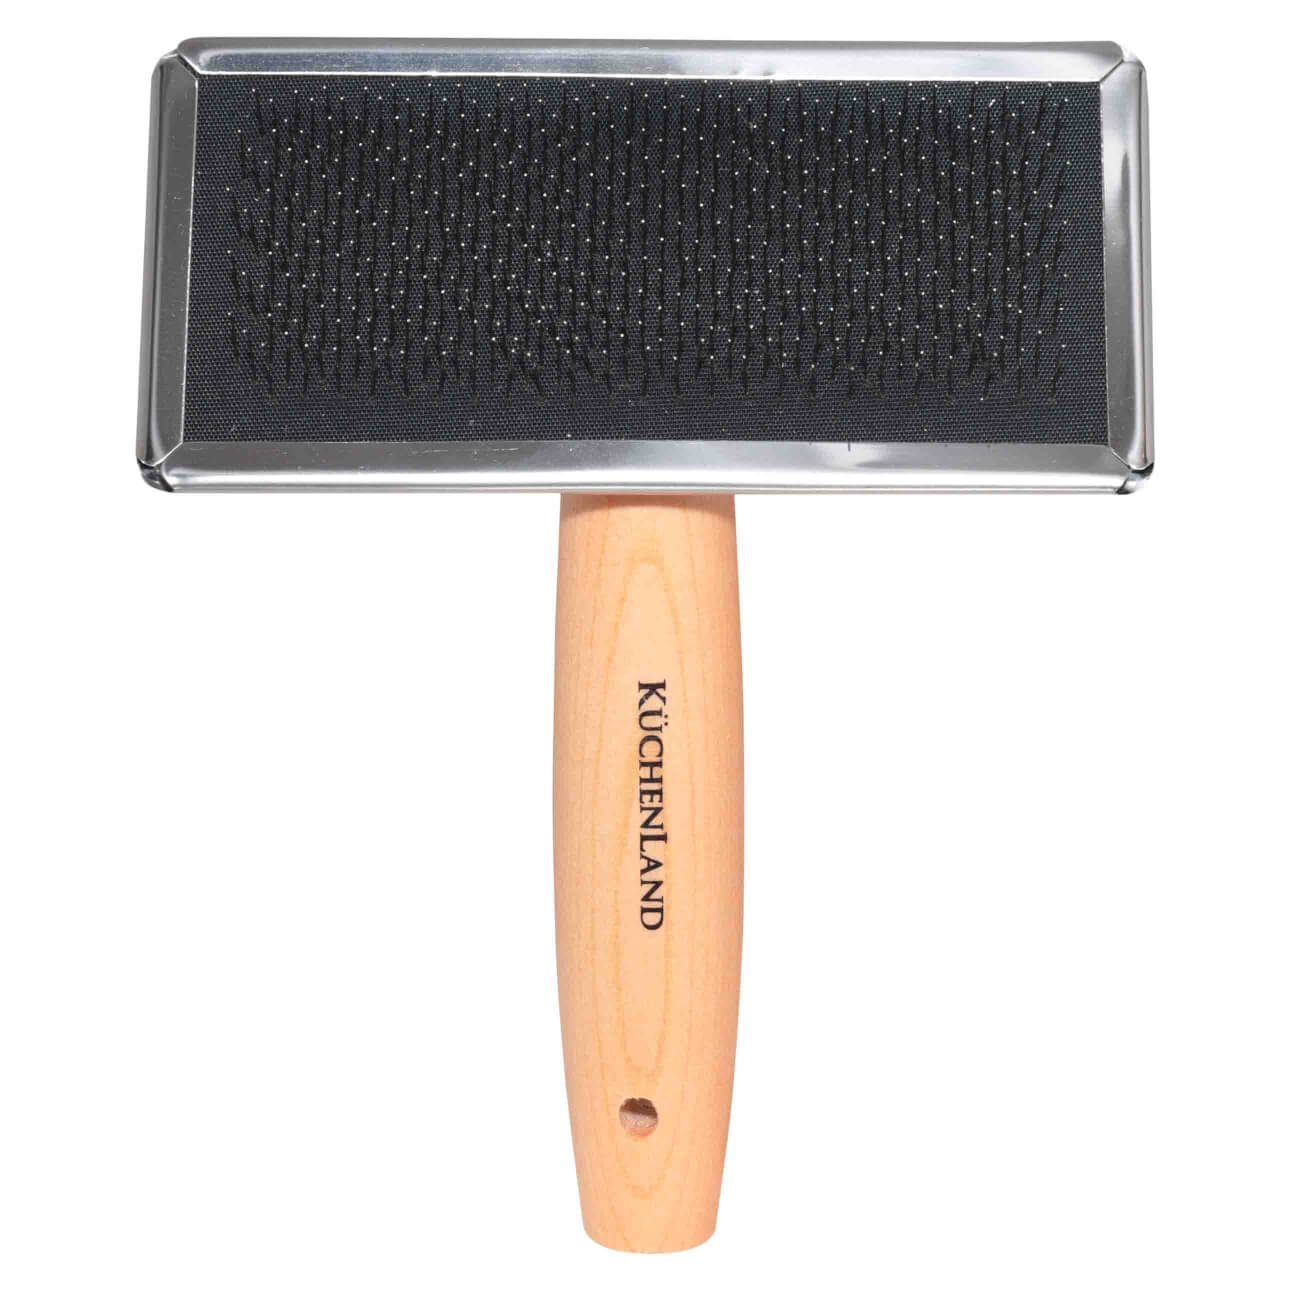 Pet hair comb, 15 cm, pukhoderka, wood / steel, Nature pet изображение № 1